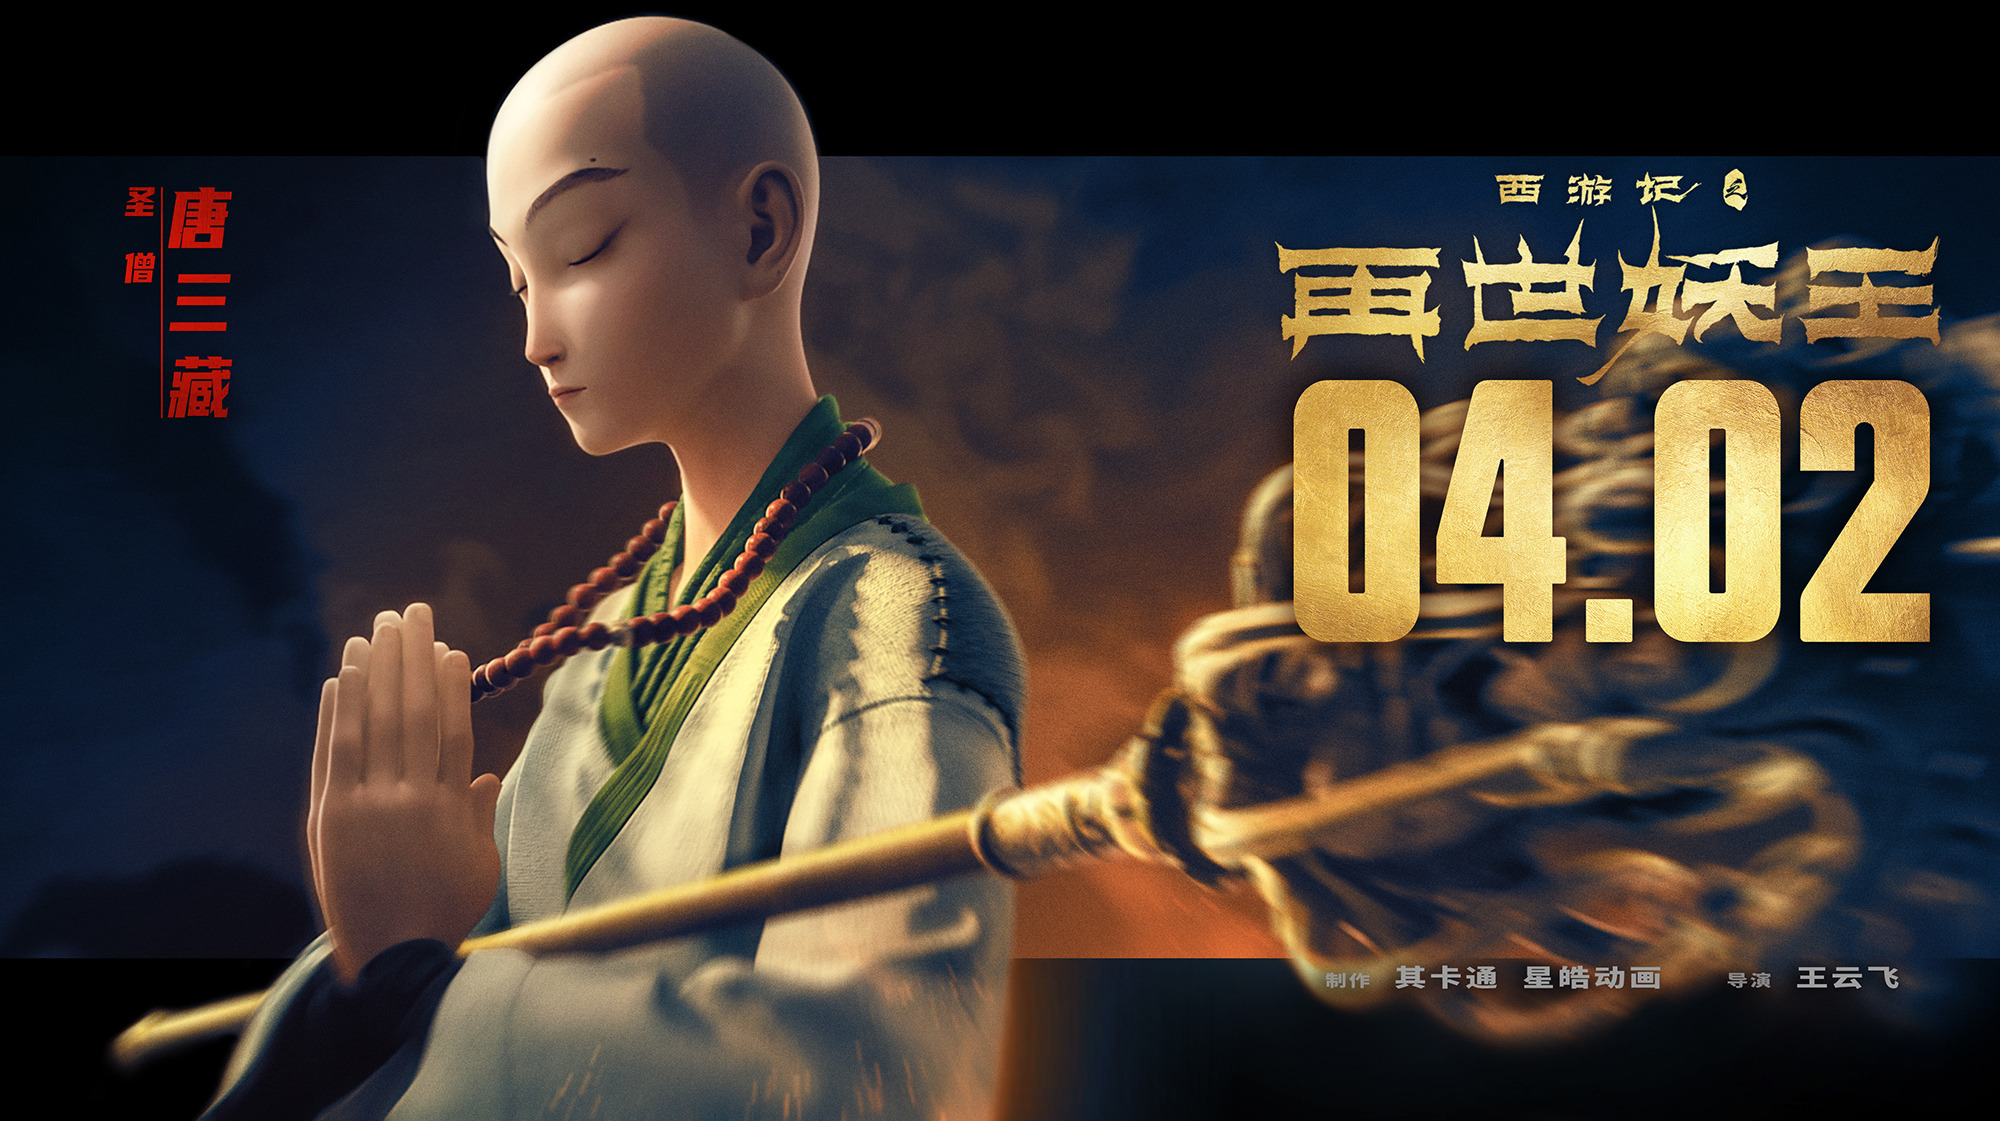 Mega Sized Movie Poster Image for Xi You Ji Zhi Zai Shi Yao Wang (#14 of 21)